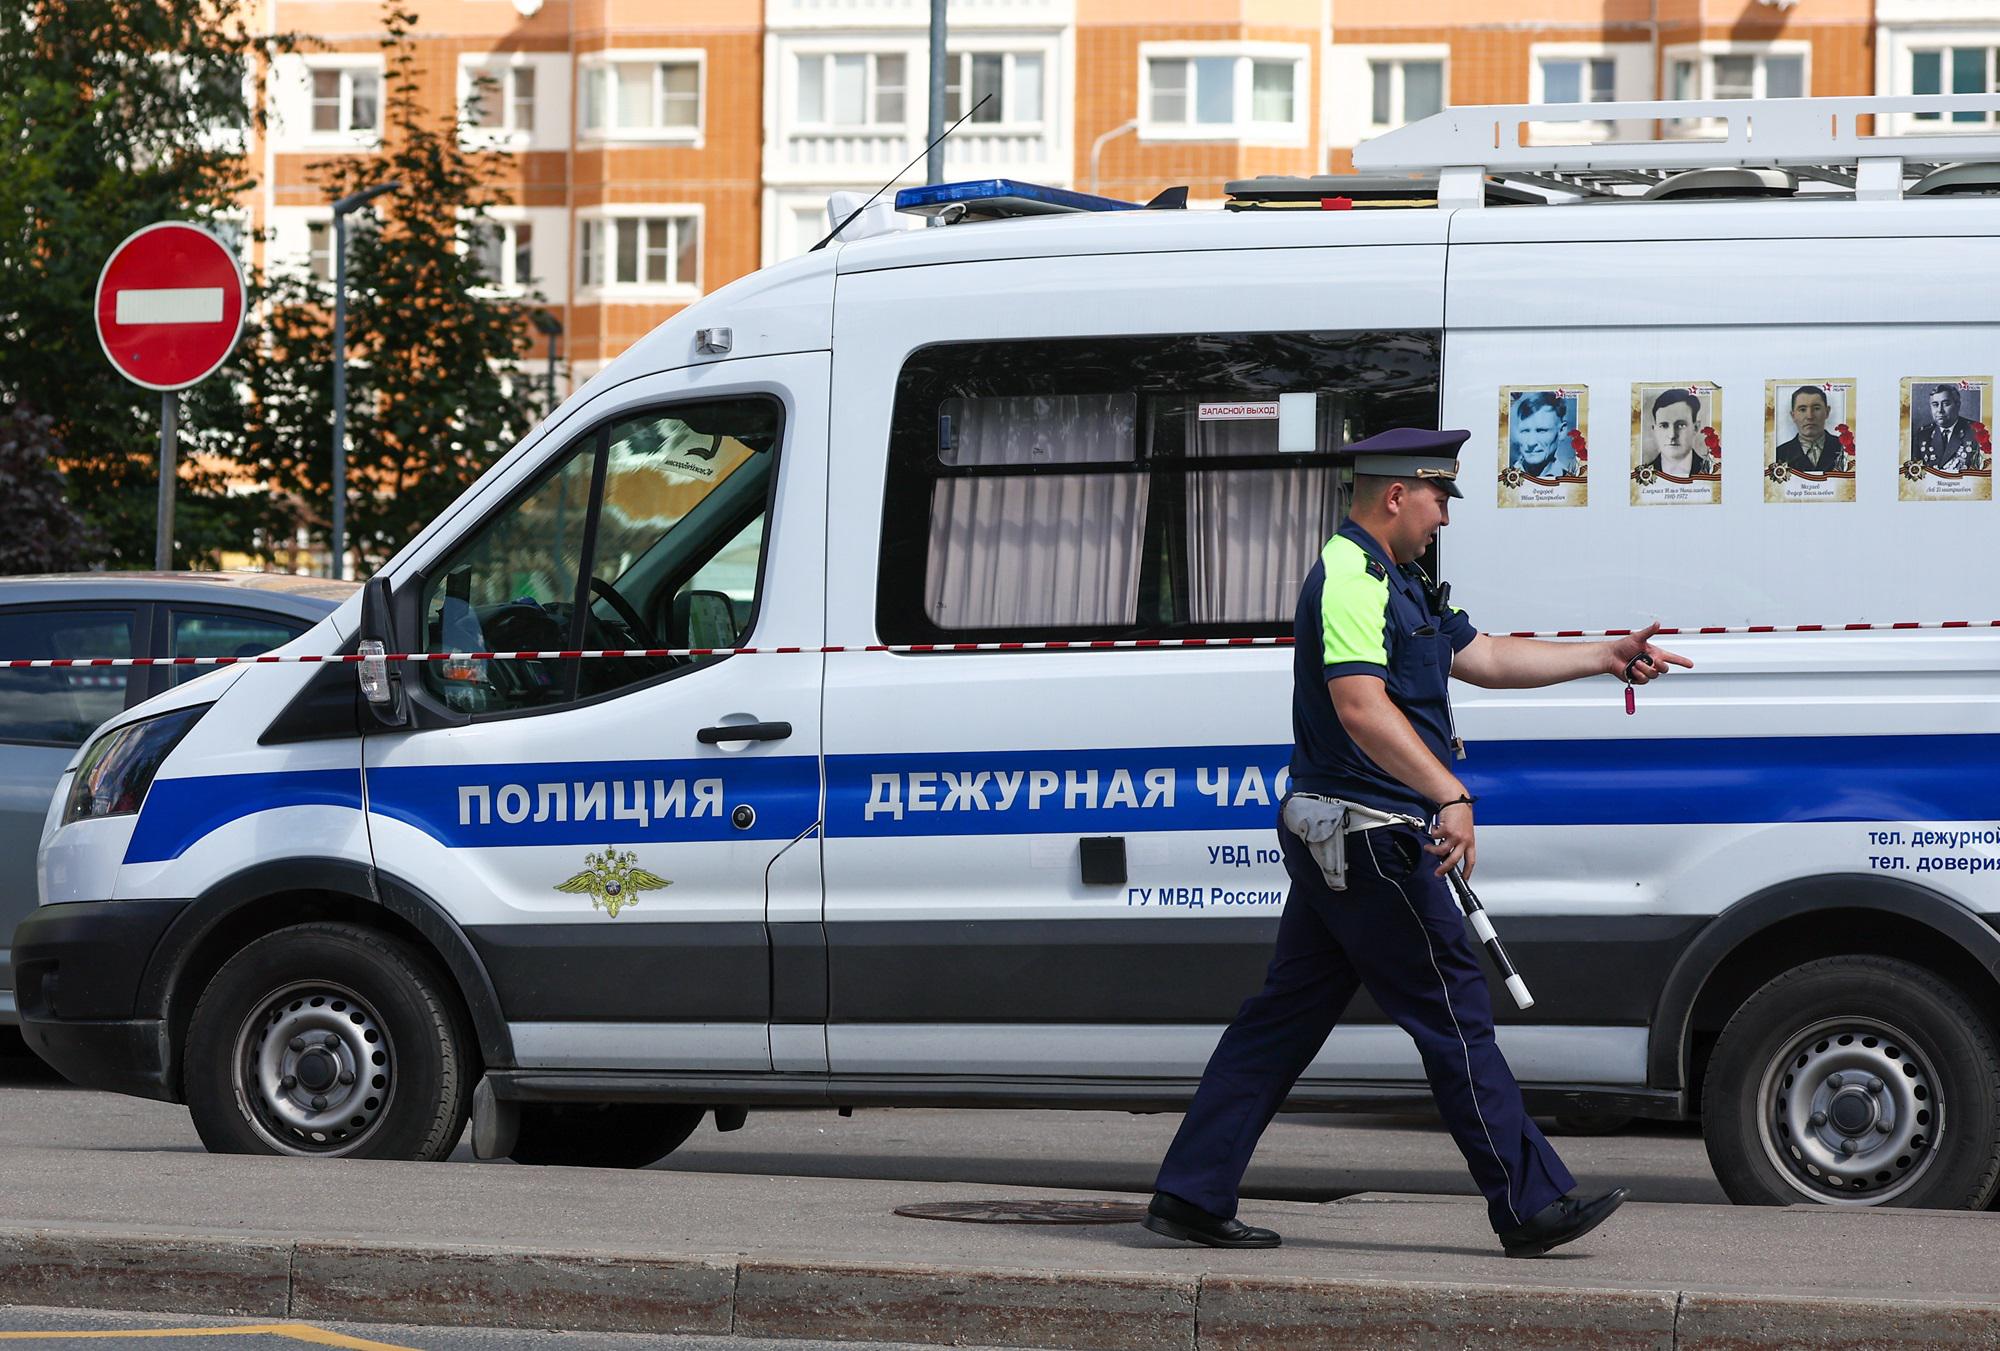 Autobomba a Mosca - 007 Russia puntano il dito: Sospetto vicino a Ucraina